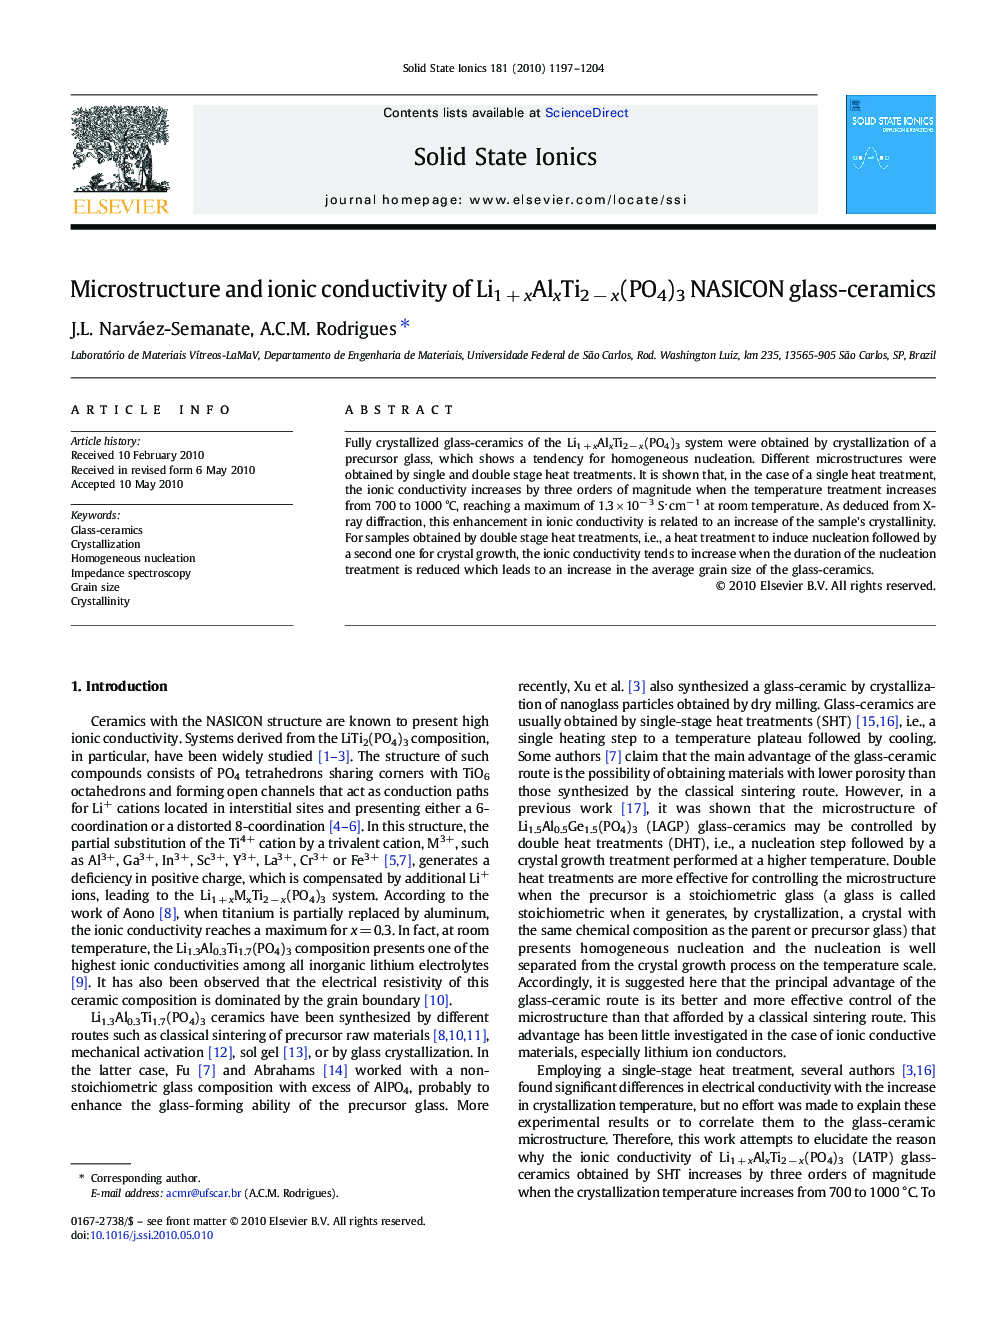 Microstructure and ionic conductivity of Li1 + xAlxTi2 − x(PO4)3 NASICON glass-ceramics